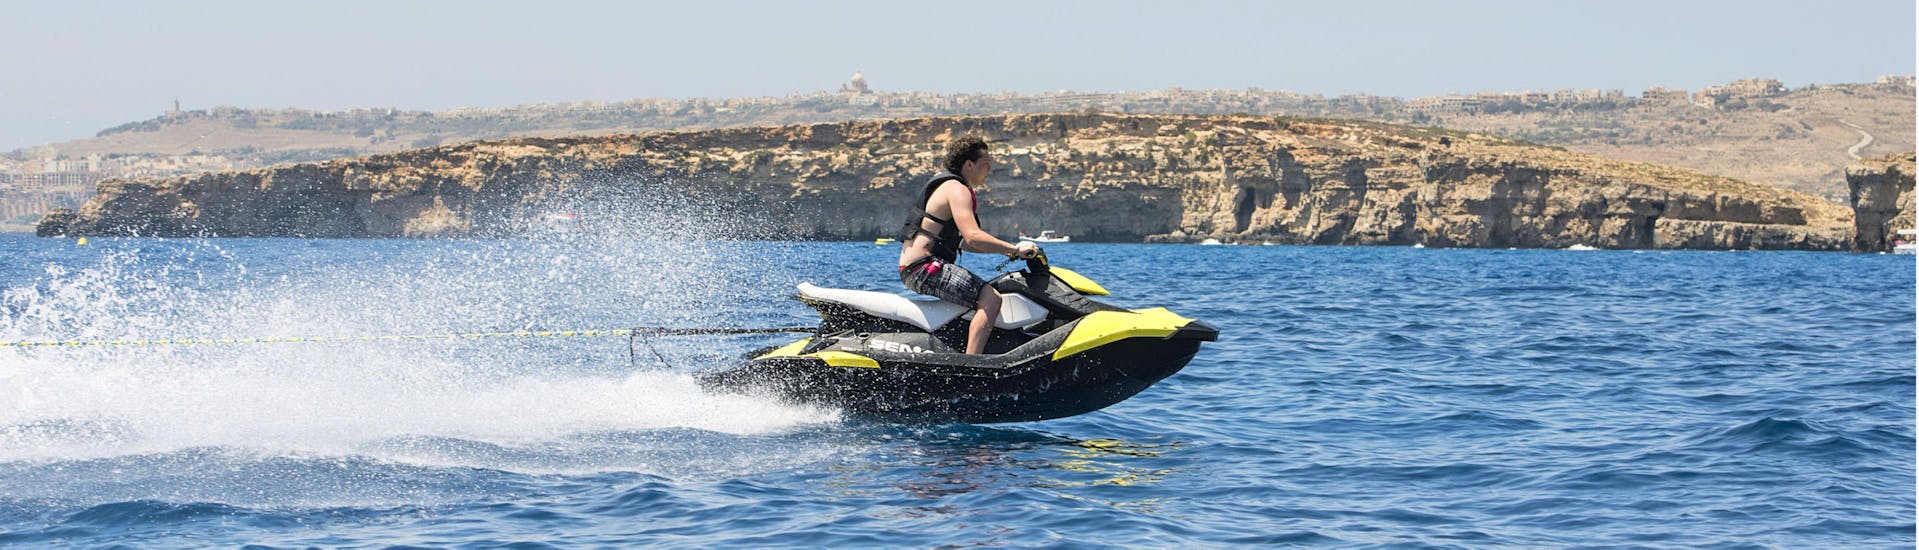 Tour in moto d'acqua a Comino e Gozo.